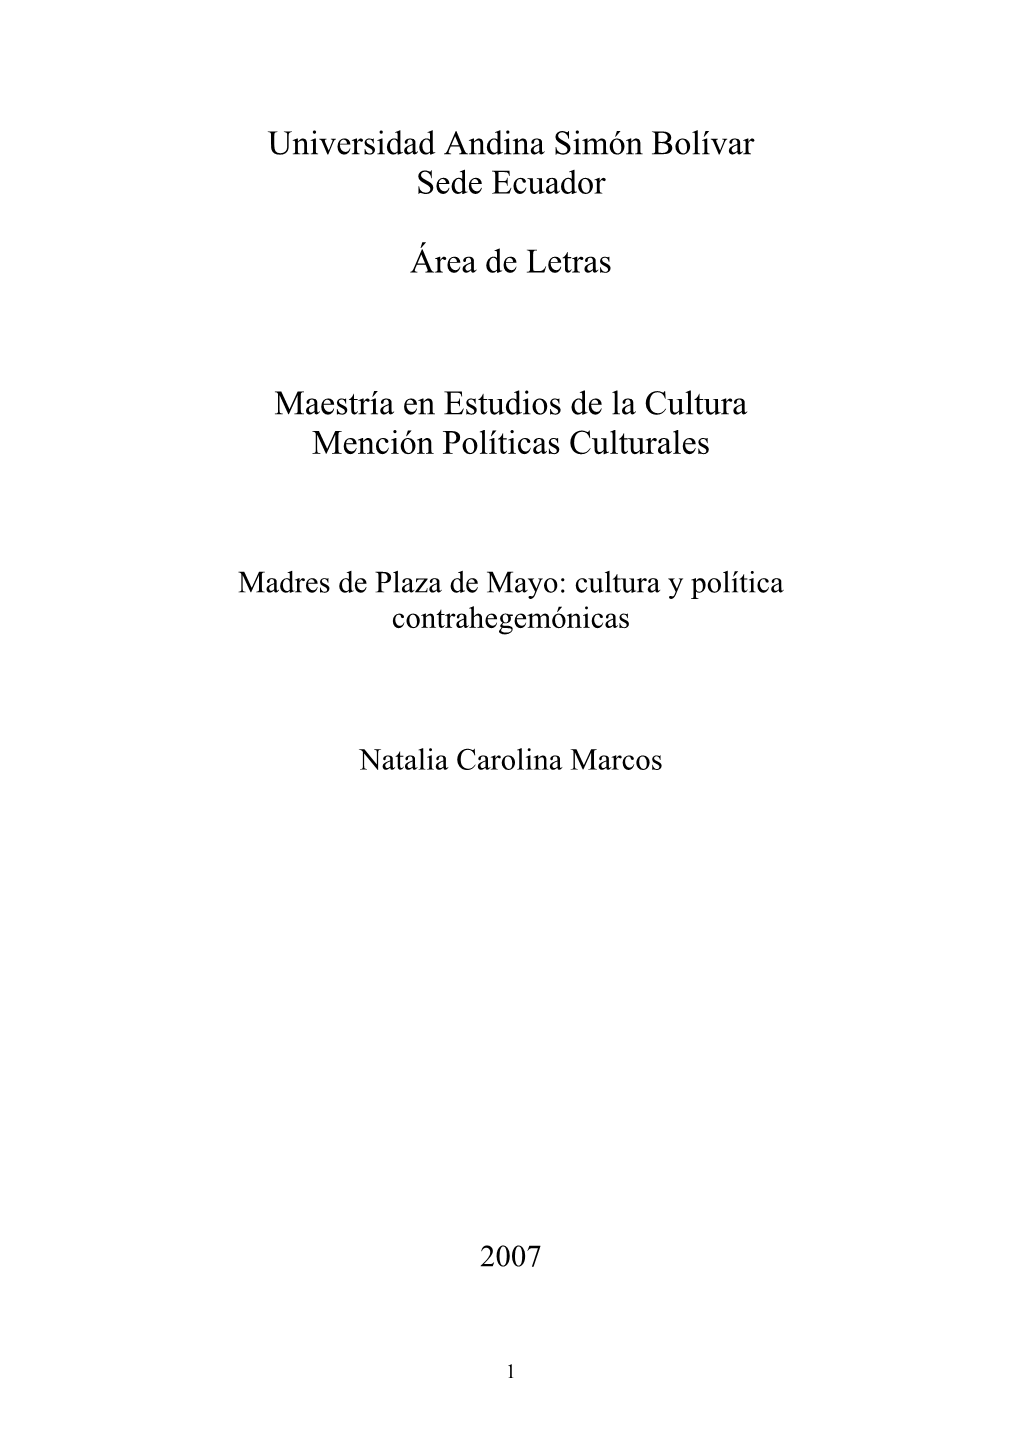 Madres De Plaza De Mayo: Cultura Y Política Contrahegemónicas Natalia Carolina Marcos 2007